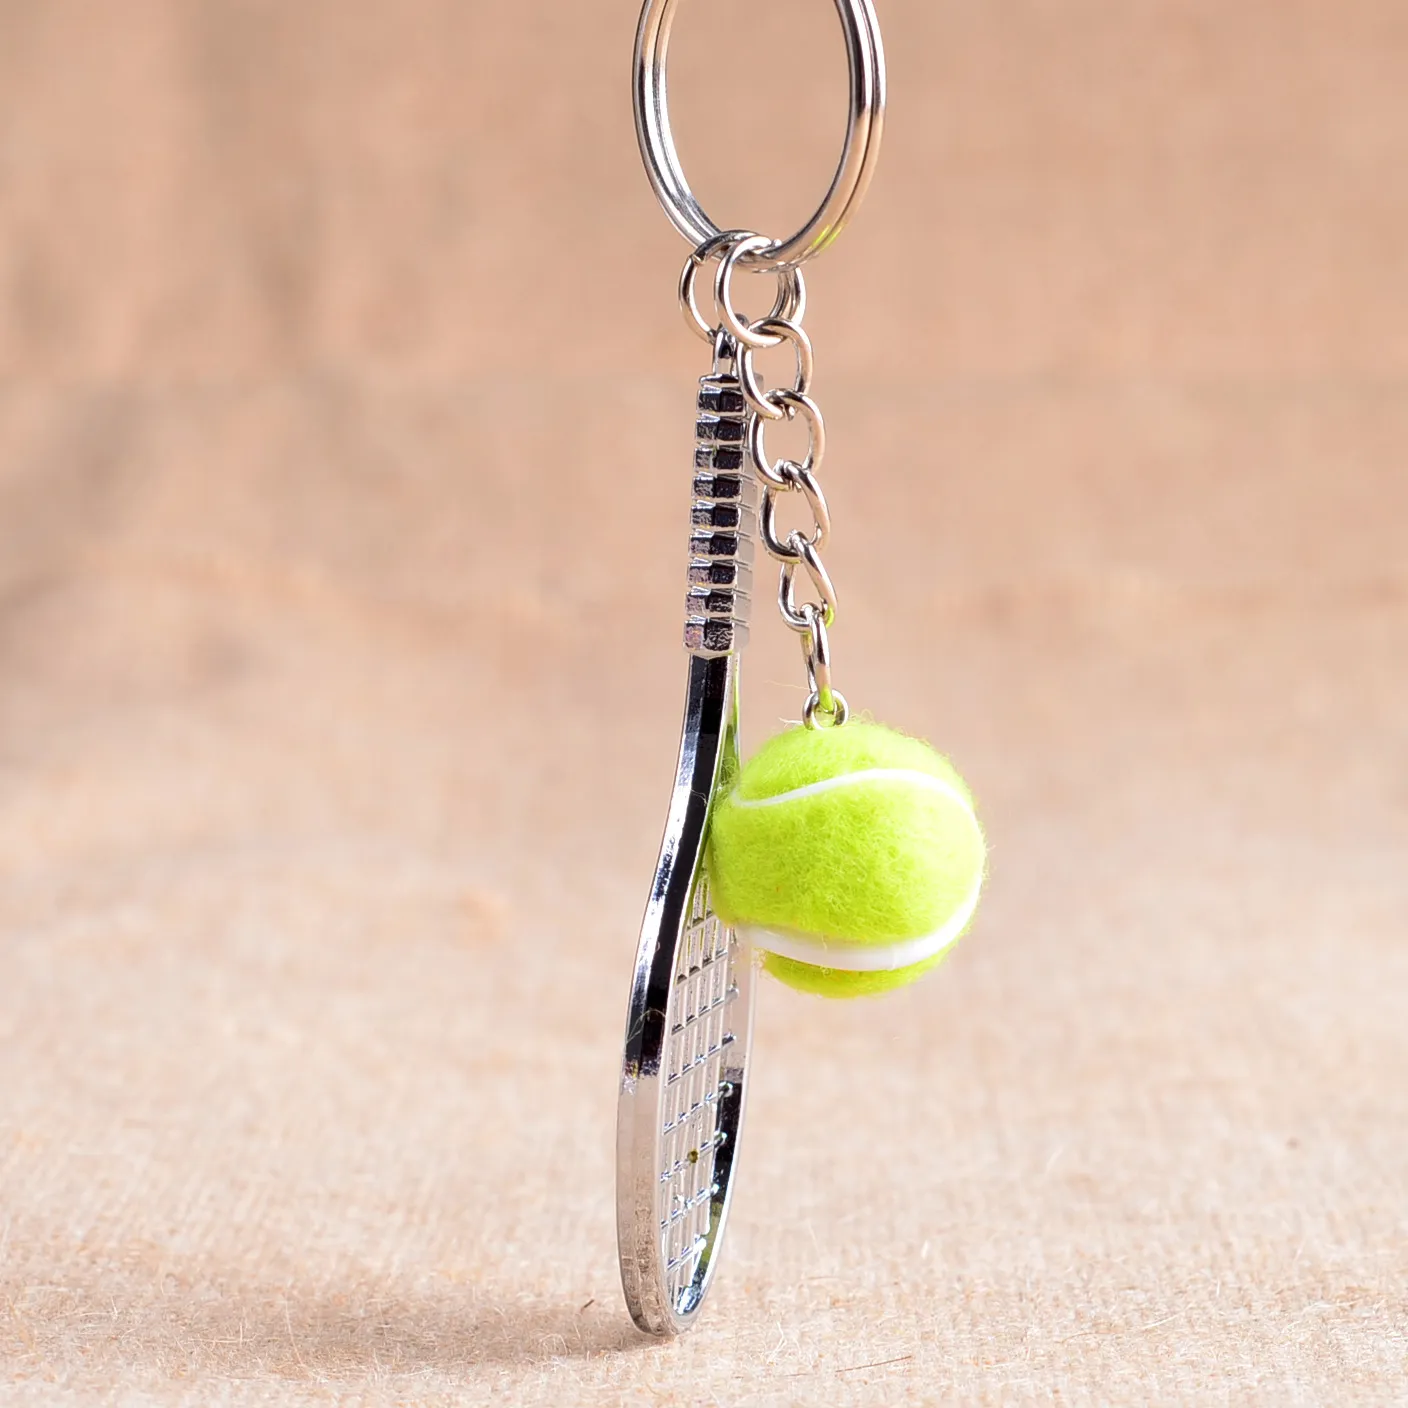 Porte-clés de raquette de tennis de haute qualité Mini porte-clés de raquette en maille métallique peut être personnalisé KR163 Porte-clés ordre de mélange 20 pièces par 